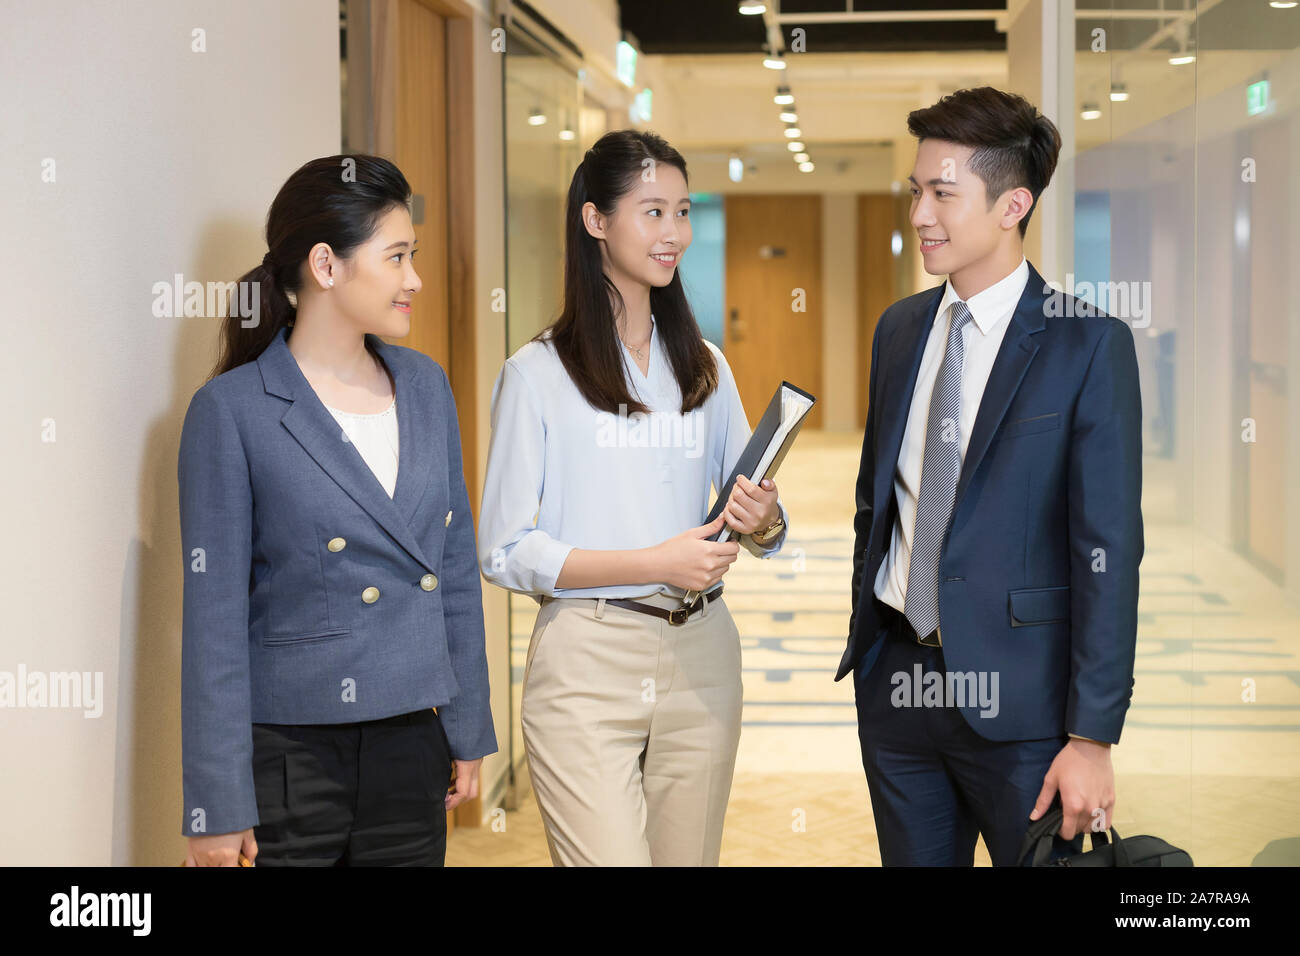 Drei männliche und weibliche junge Geschäftsleute sprechen zusammen und stehen in einem Büro Flur und einer von ihnen ist mit einem Binder Stockfoto